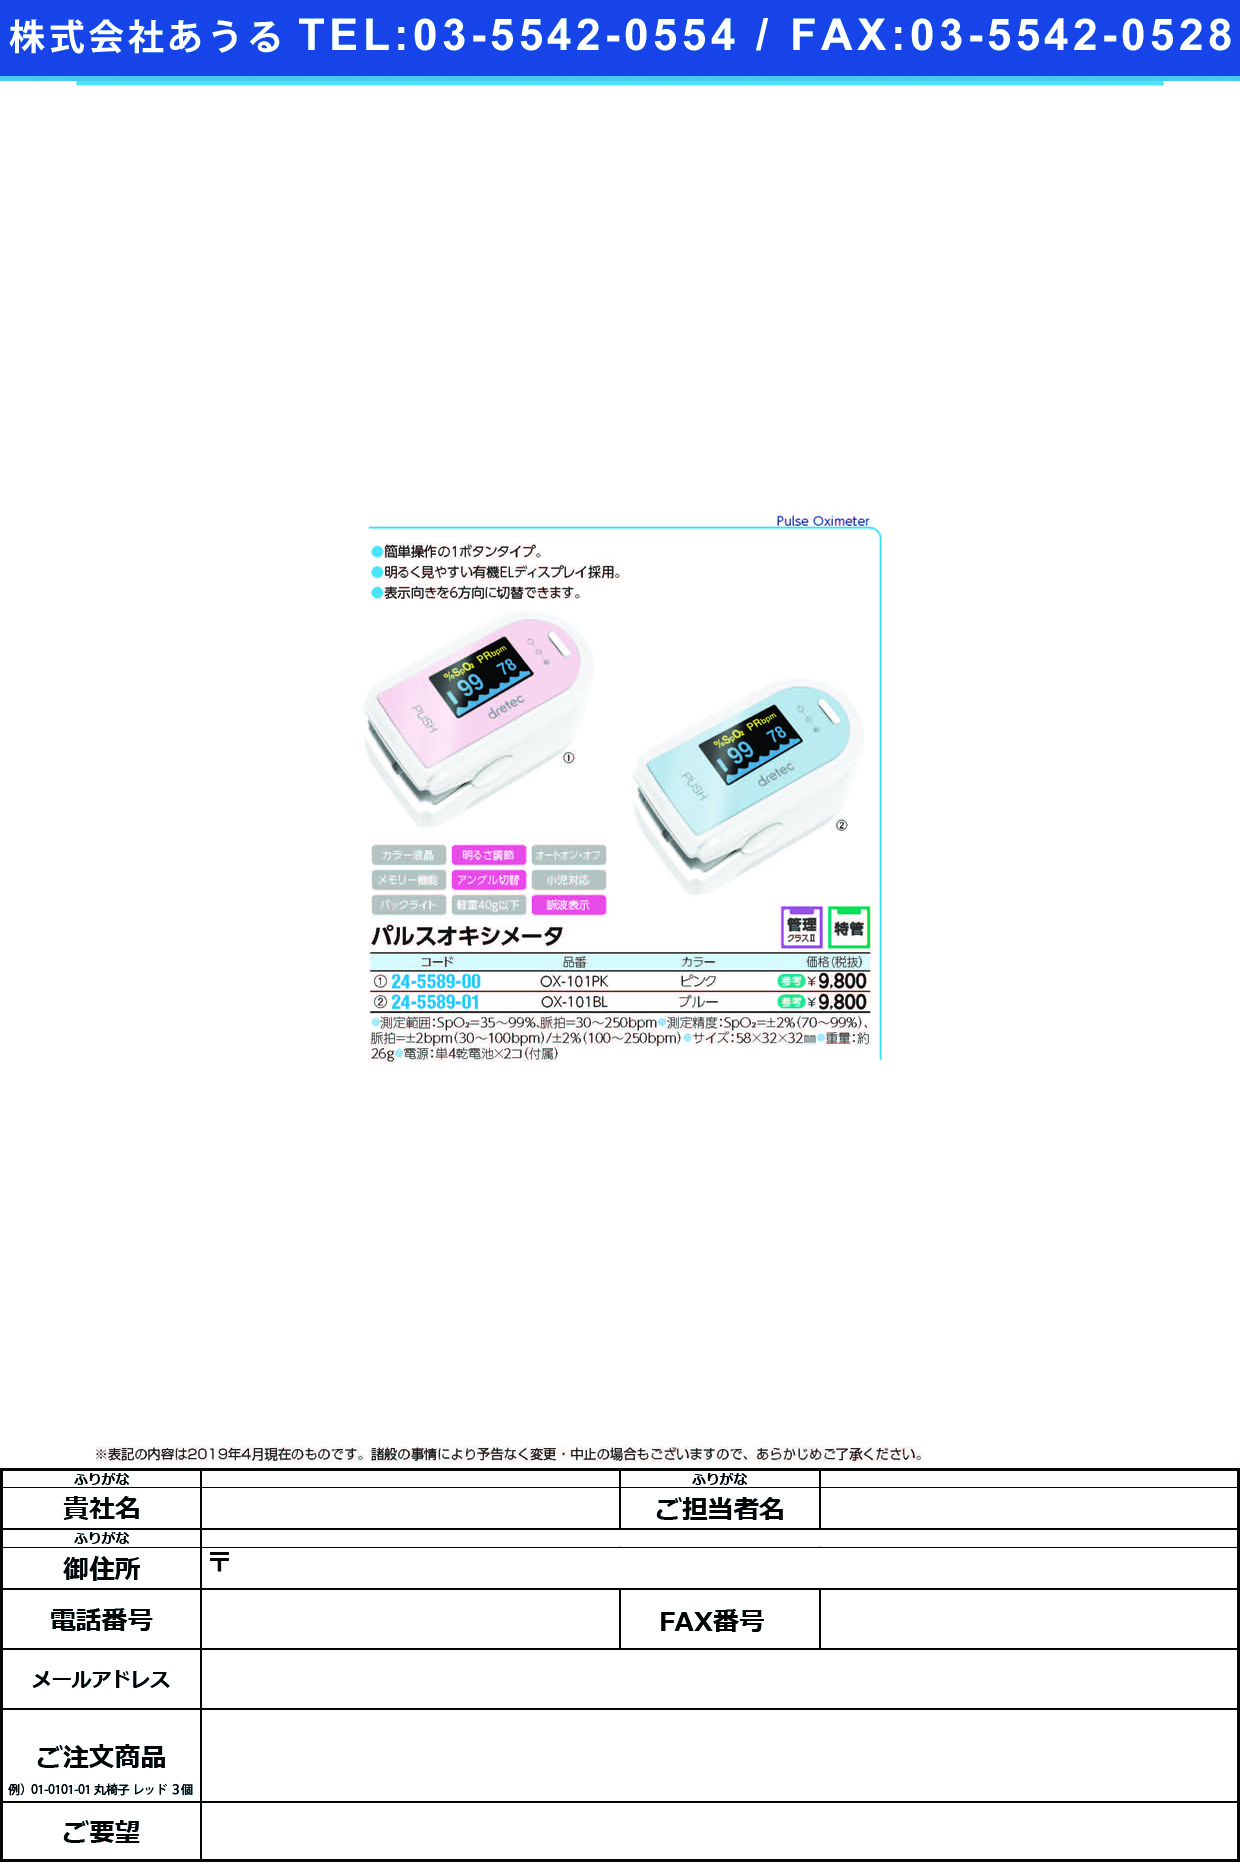 (24-5589-00)パルスオキシメータ OX-101PK(ﾋﾟﾝｸ) ﾊﾟﾙｽｵｷｼﾒｰﾀ(ドリテック)【1台単位】【2019年カタログ商品】